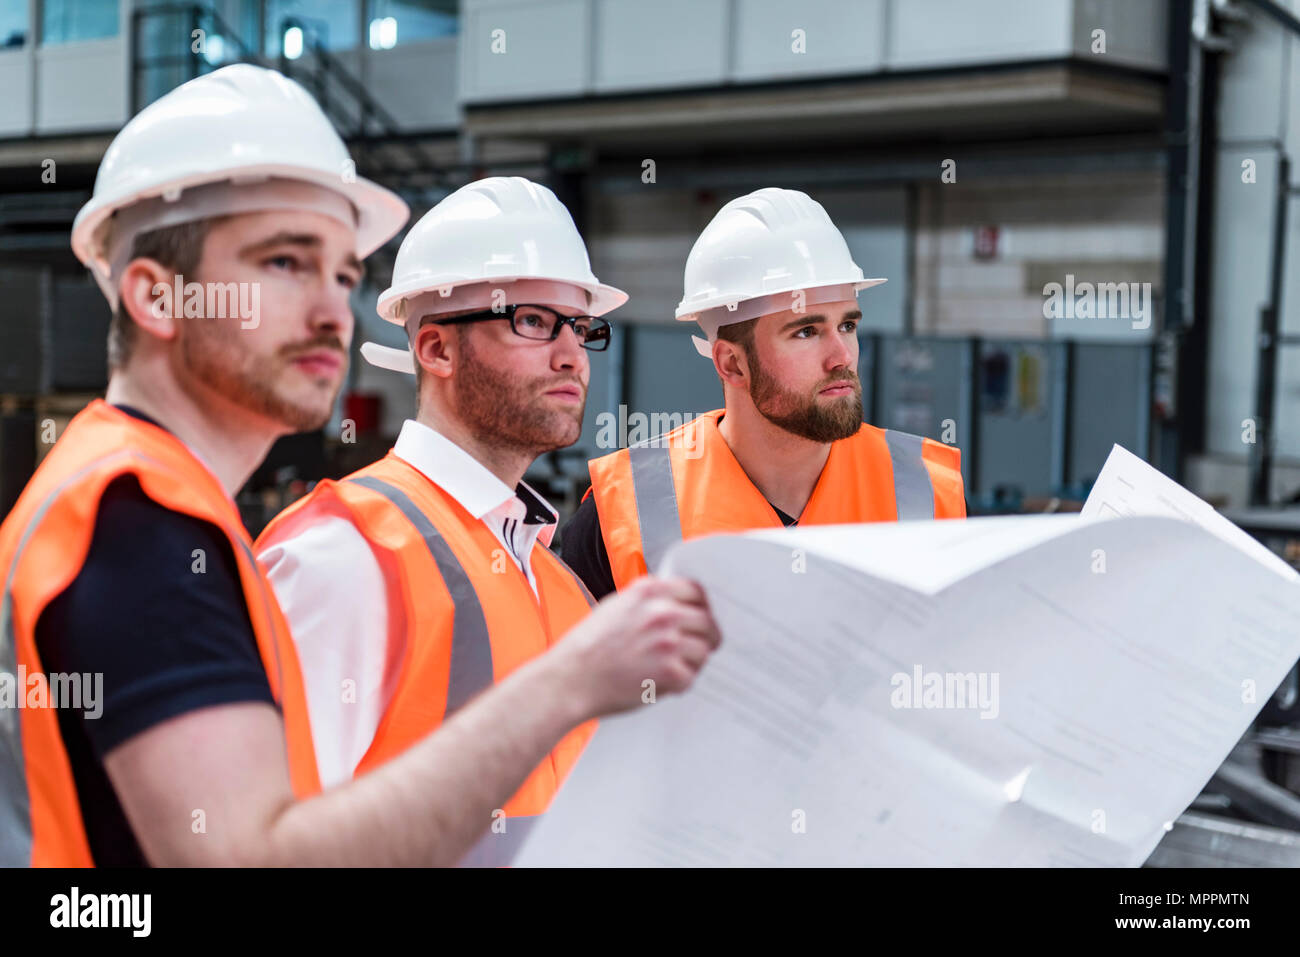 Tres hombres que vestían los cascos y chalecos de seguridad plan de explotación en la fábrica. Foto de stock